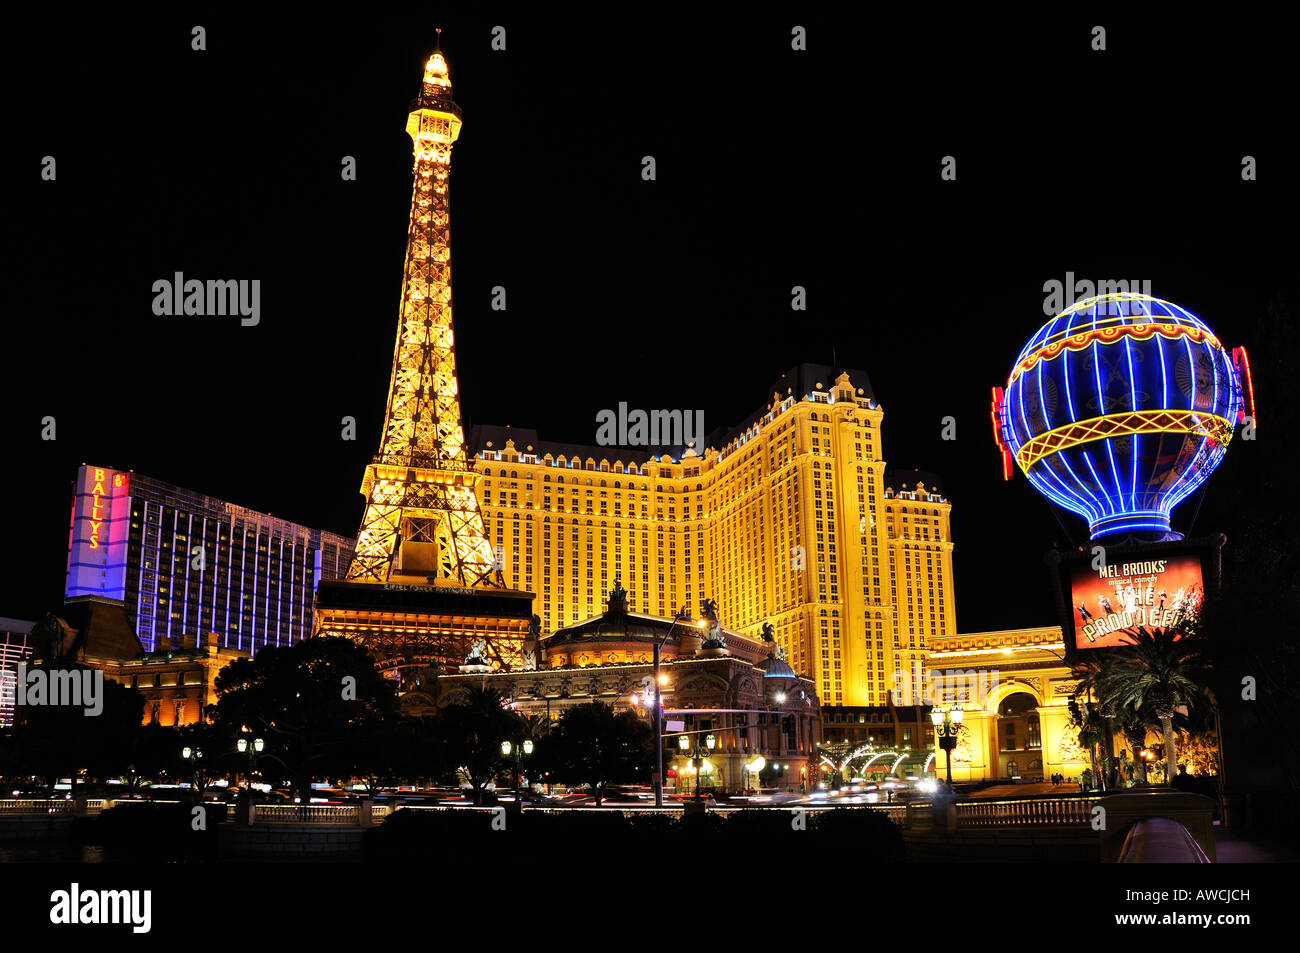 The Paris Hotel and Casino Las Vegas at Night Stock Photo